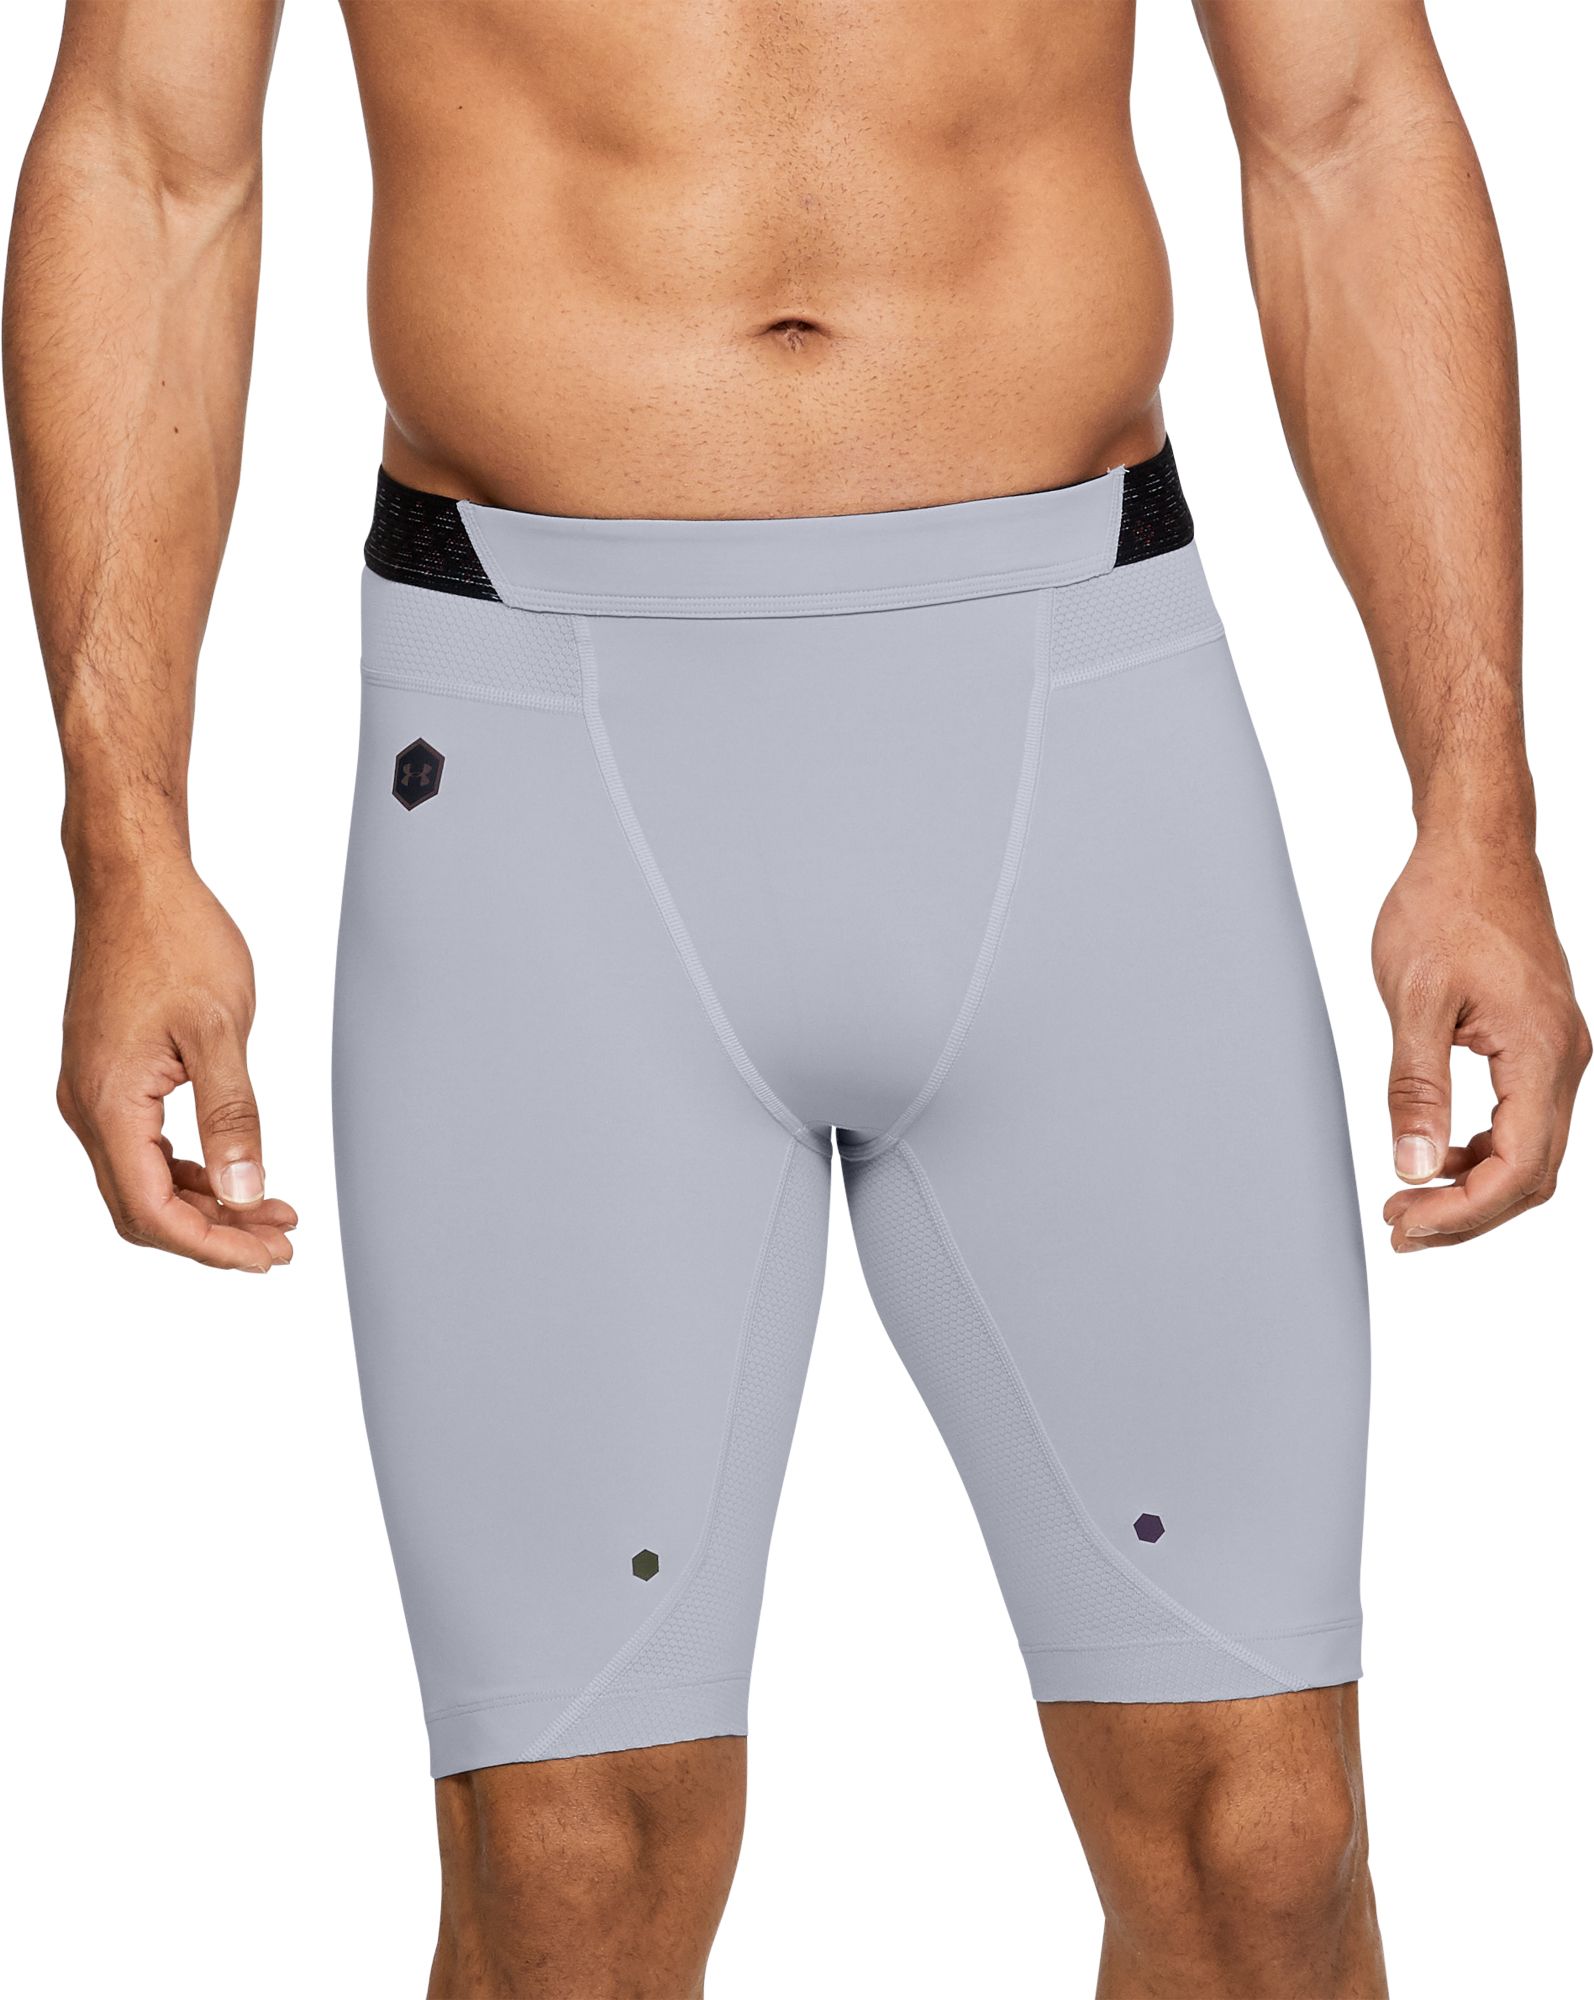 under shorts for men